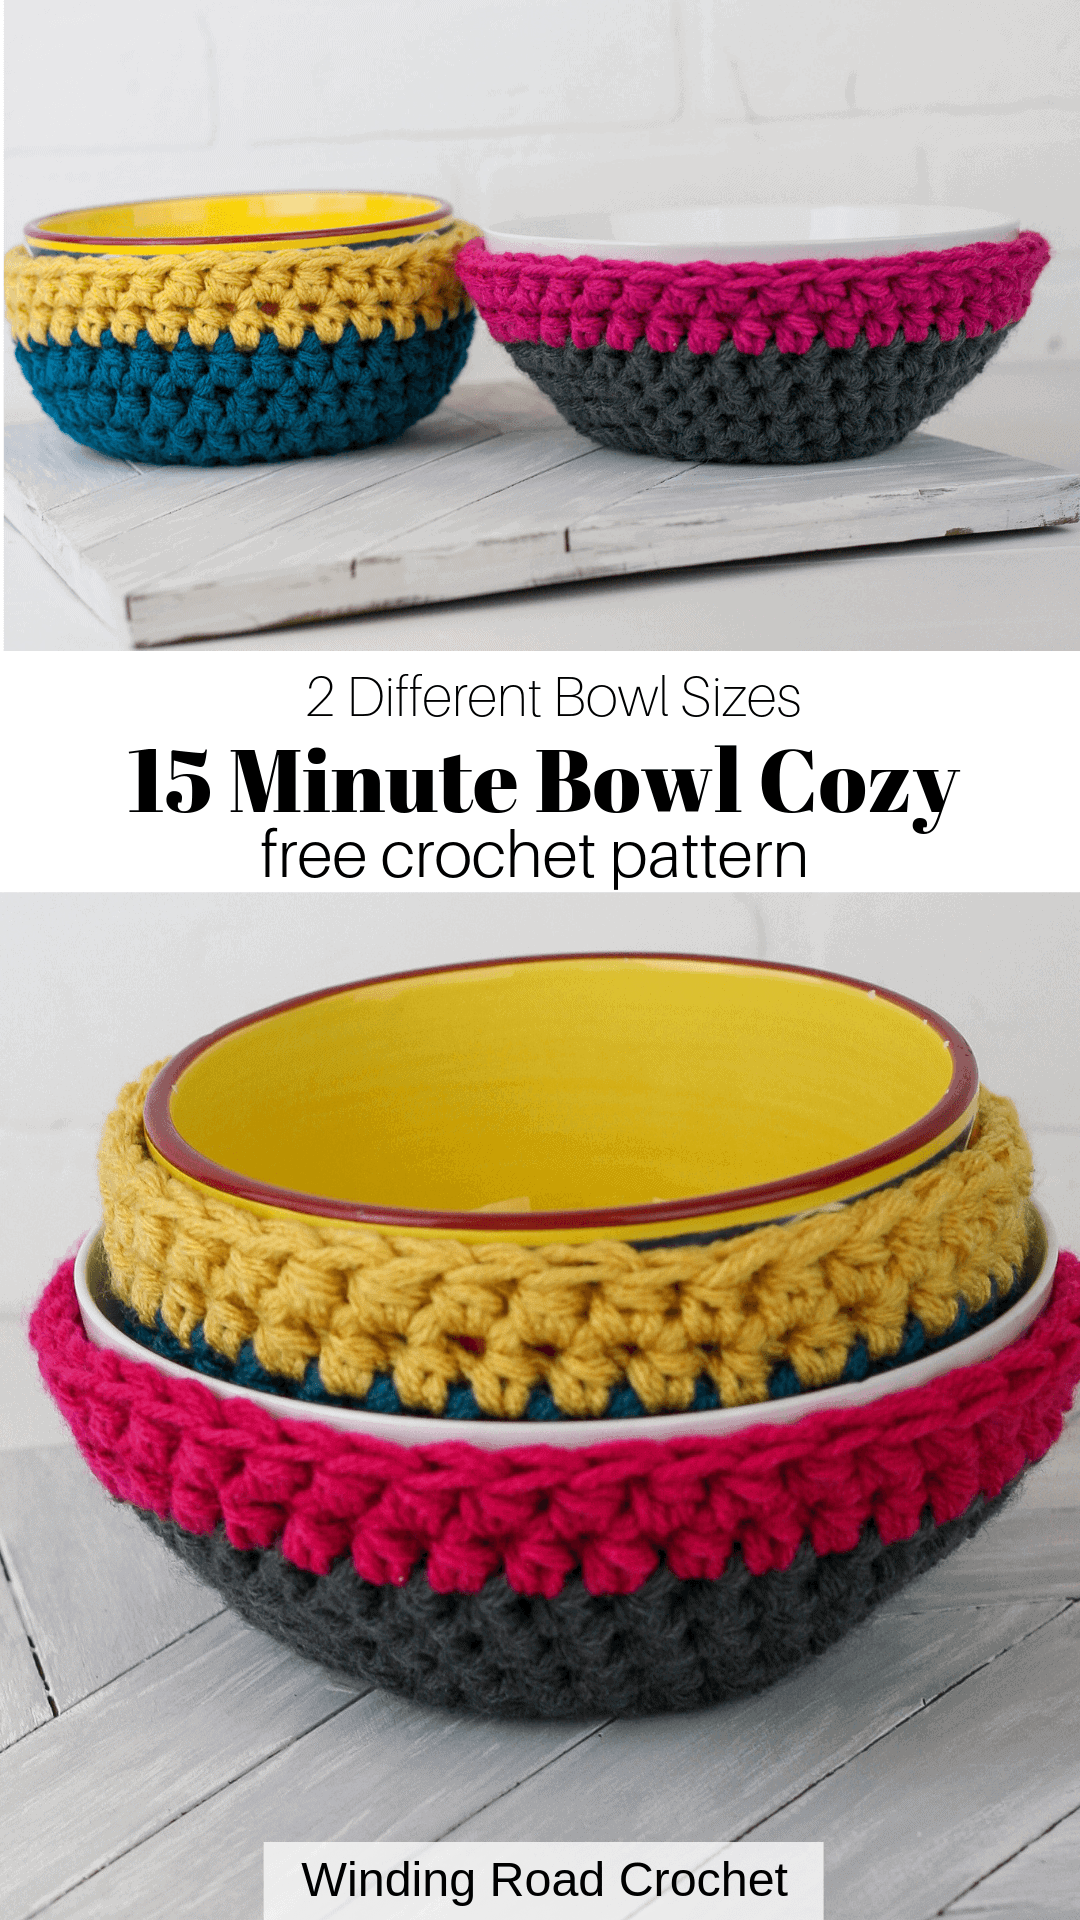 15-minute-easy-crochet-bowl-cozy-free-pattern-winding-road-crochet